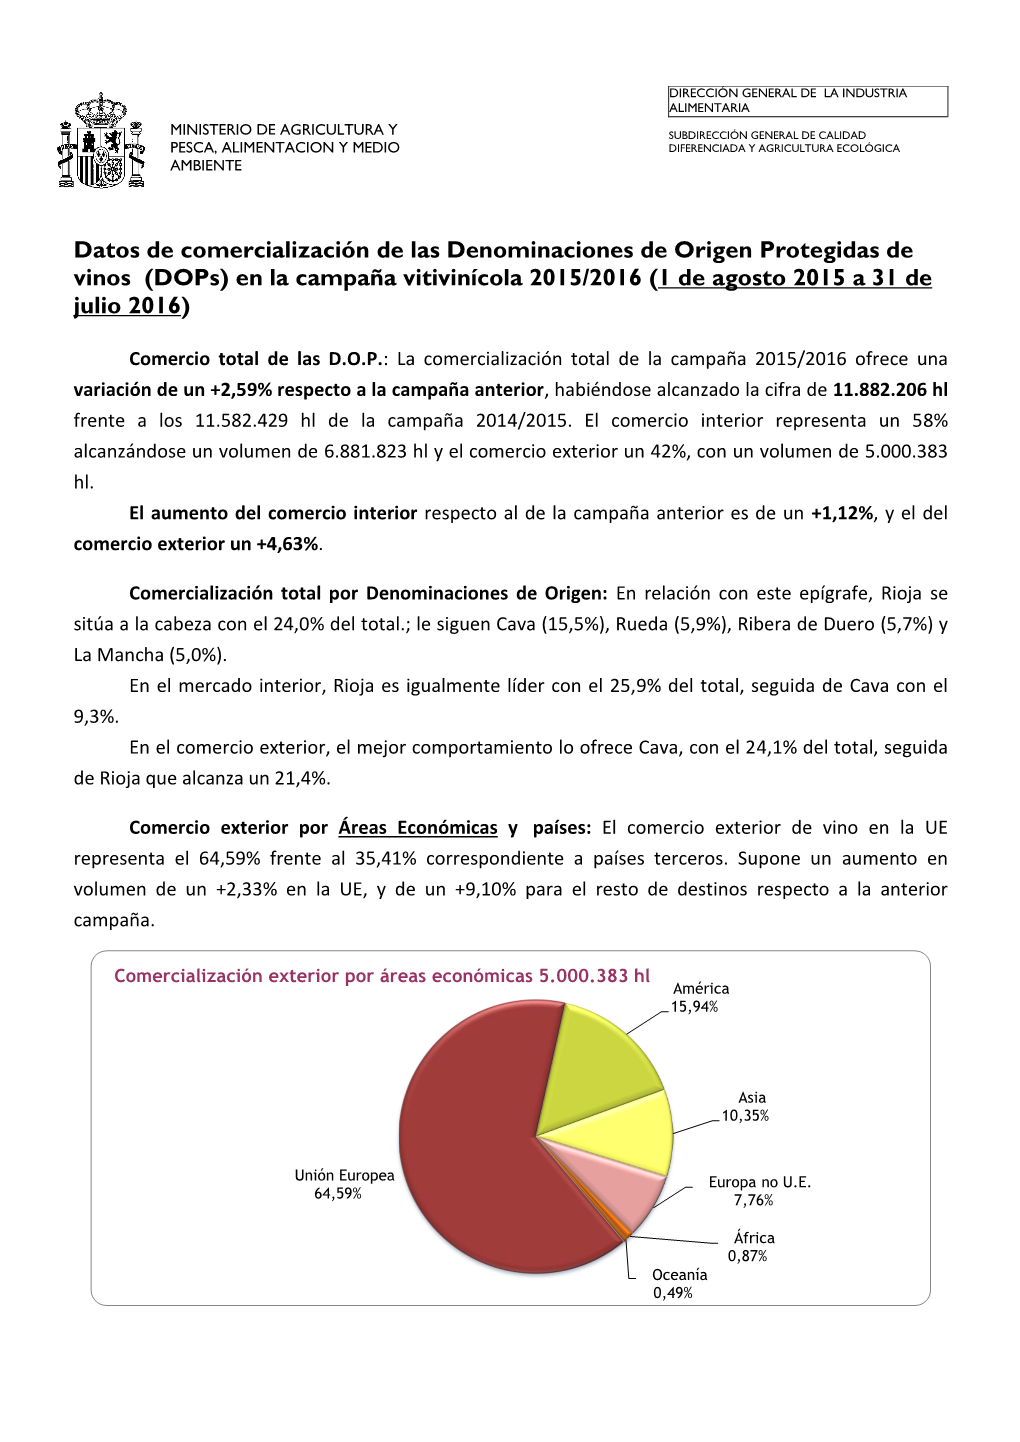 Datos De Comercialización De Las Denominaciones De Origen Protegidas De Vinos (Dops) En La Campaña Vitivinícola 2015/2016 (1 De Agosto 2015 a 31 De Julio 2016)